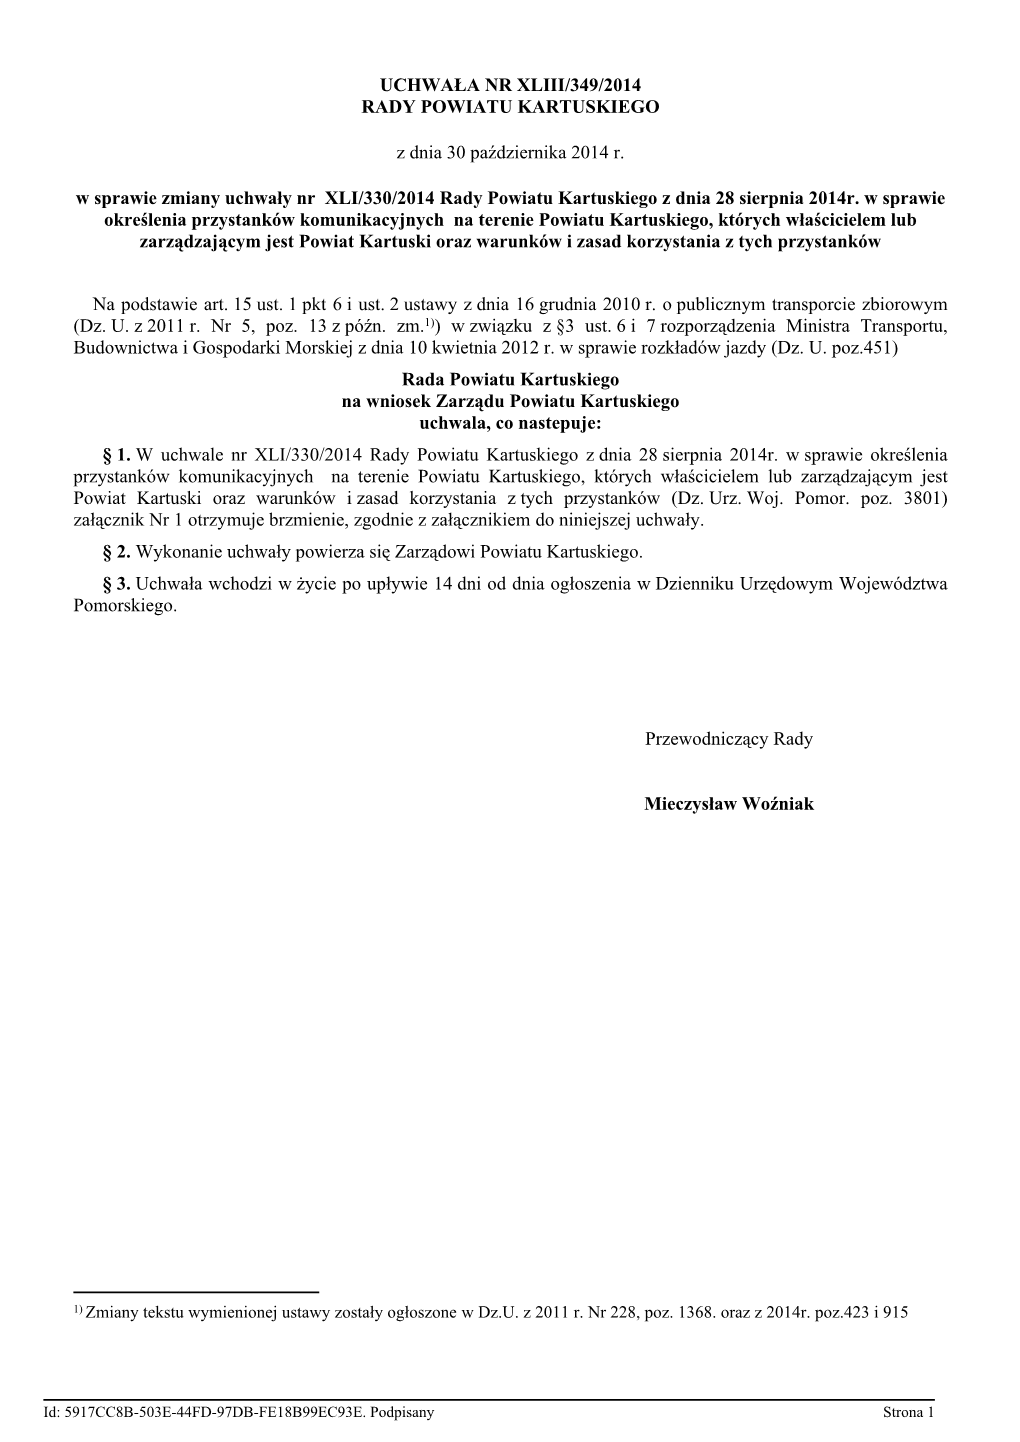 Uchwała Nr Xliii/349/2014 Rady Powiatu Kartuskiego